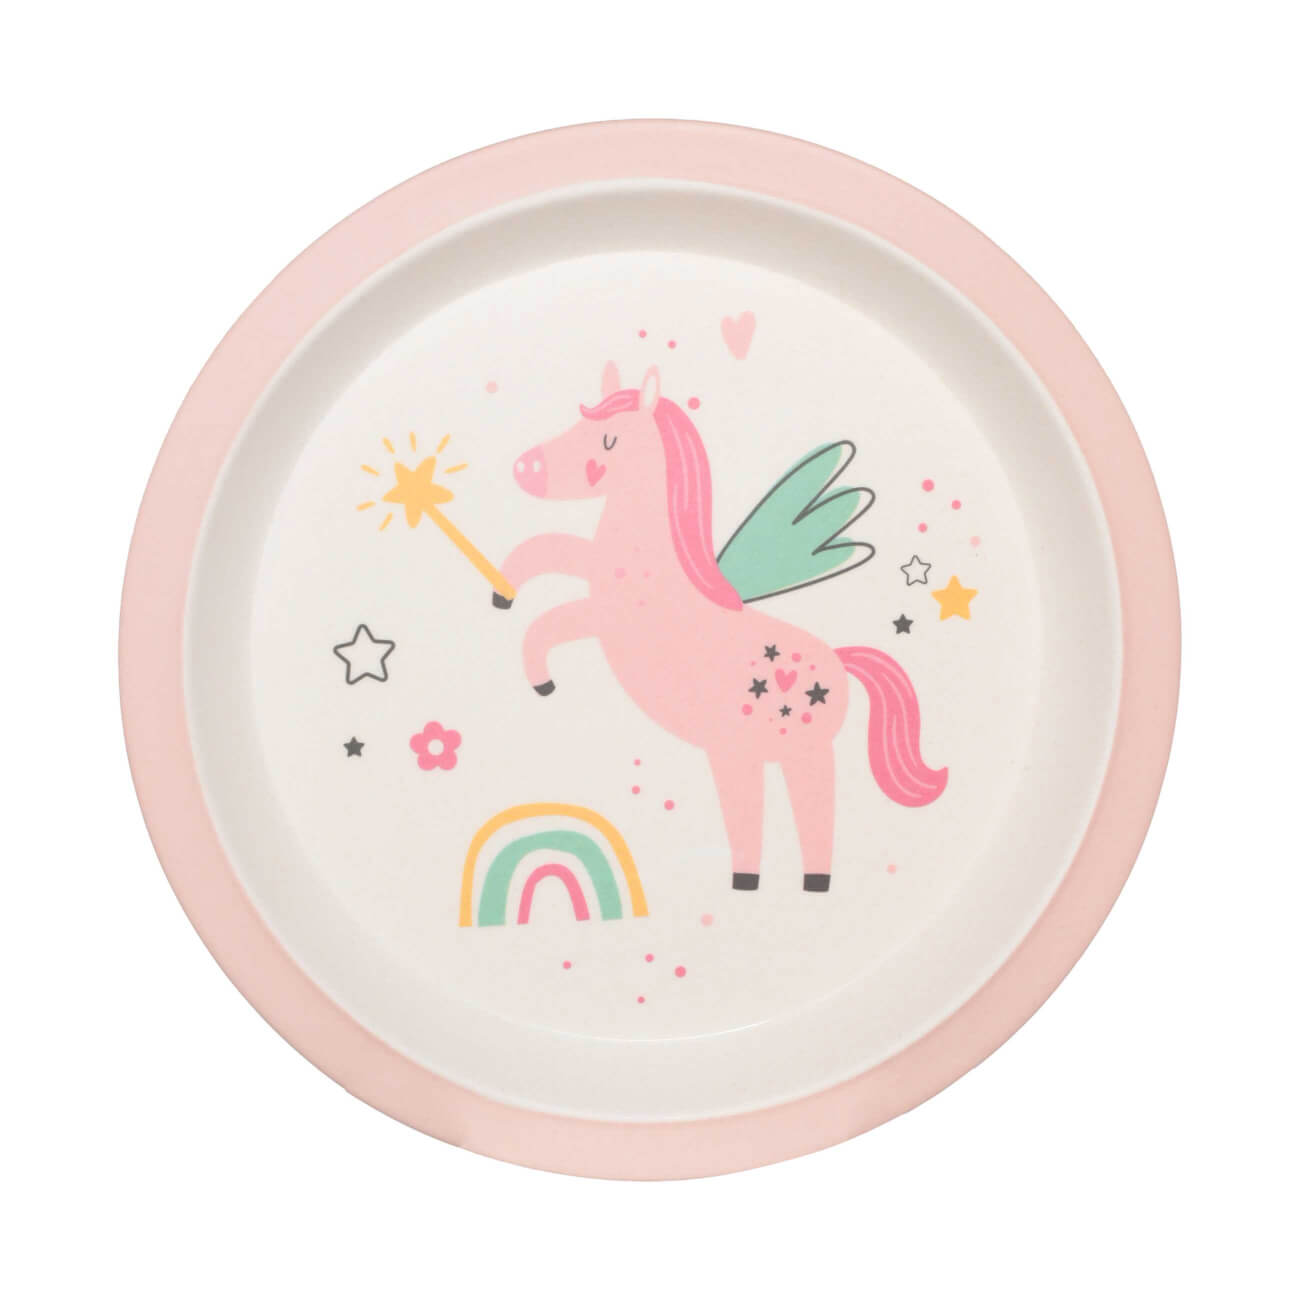 Тарелка закусочная, детская, 21 см, бамбук, розовая, Единорог и радуга, Unicorn изображение № 1